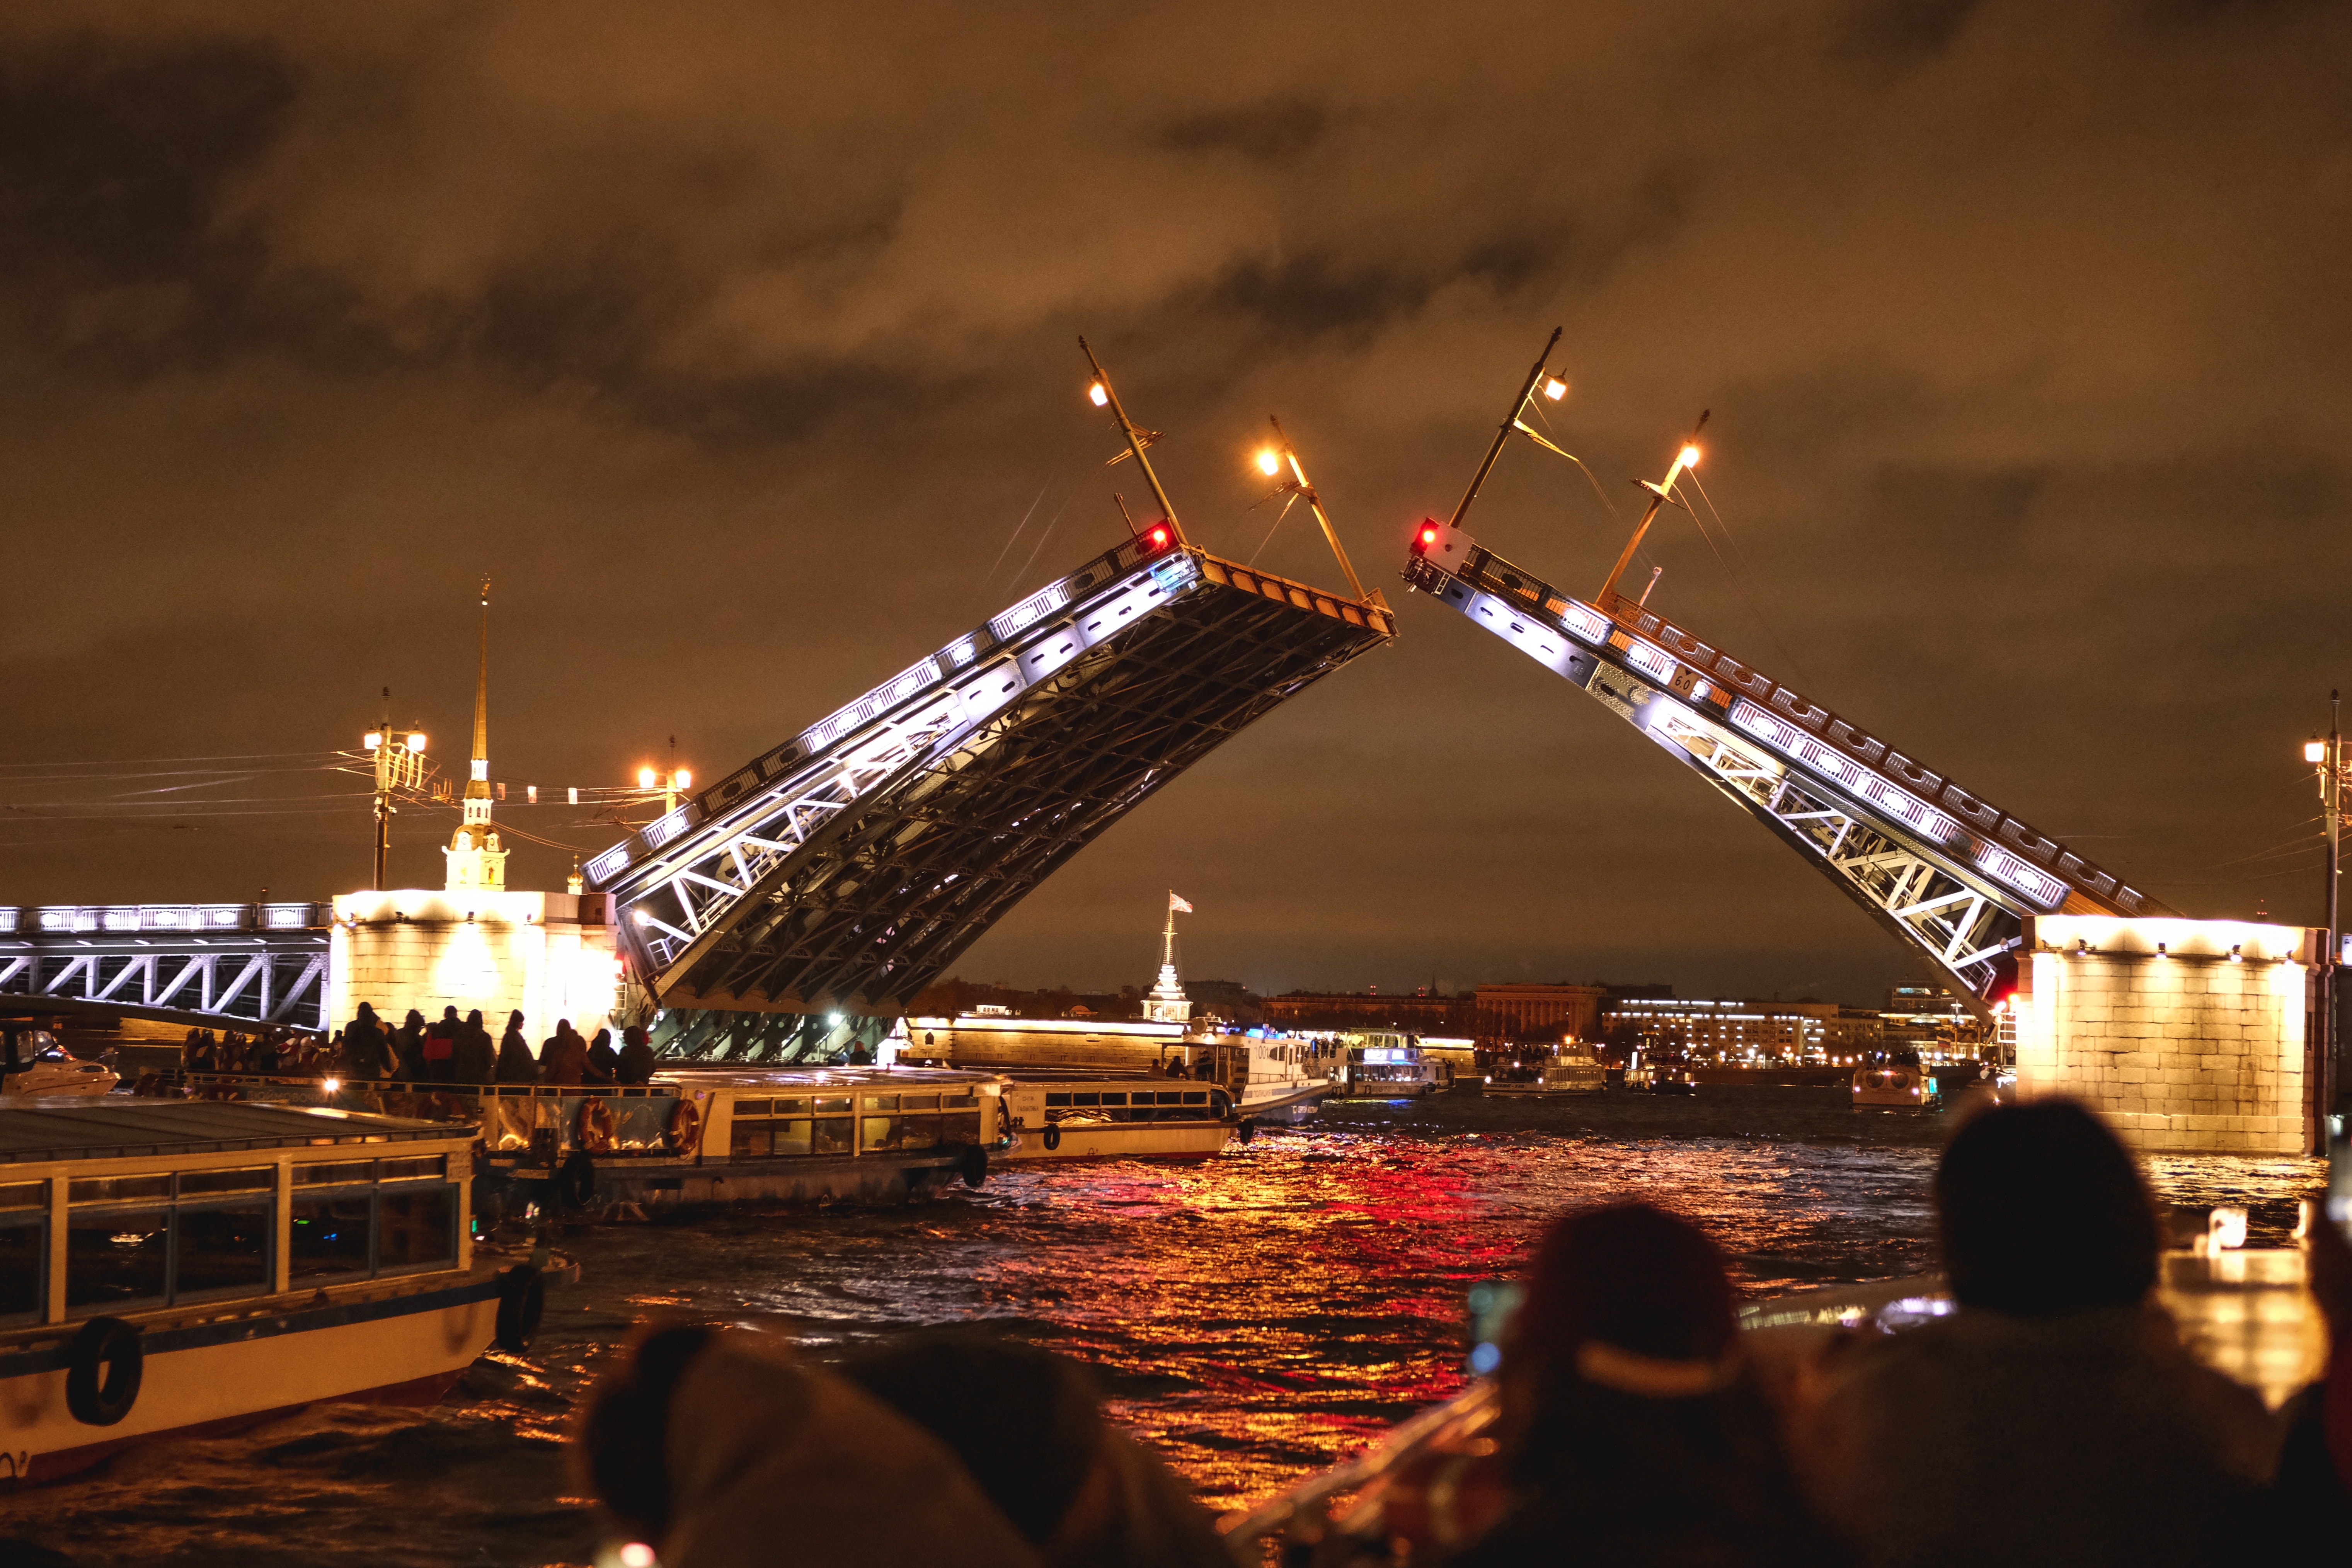 Петербург вошел в топ-3 туристических направлений для путешествий 4-6 ноября